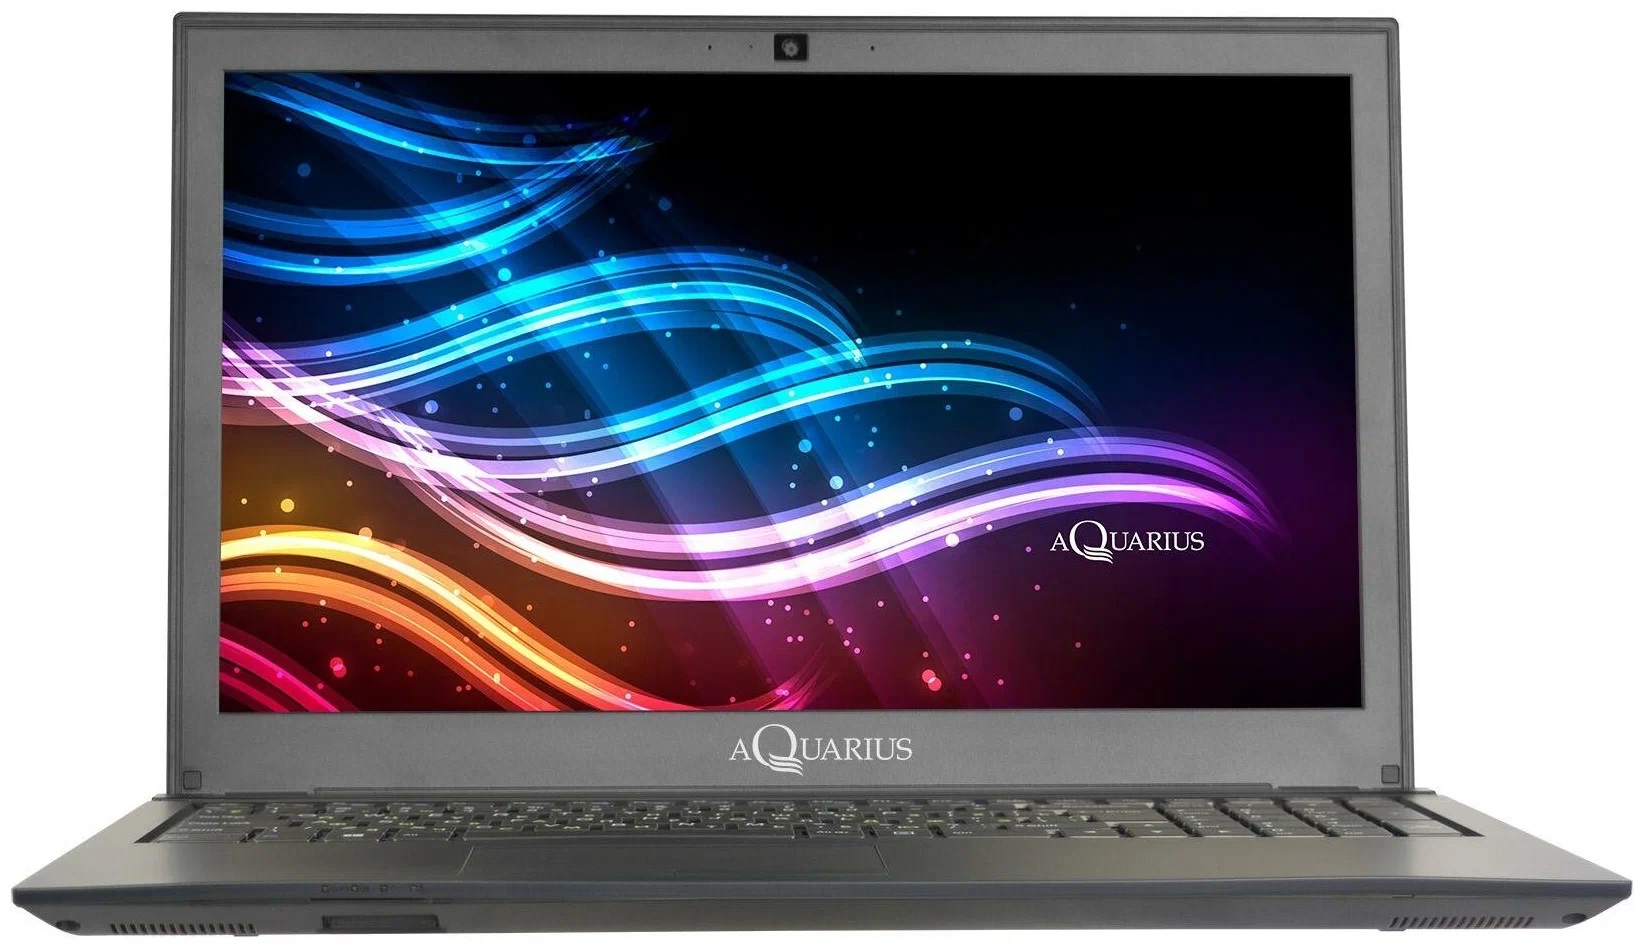 Ноутбук Aquarius Cmp NS685U R11 (Исп 4.3) Intel Core i3 1125G4/8Gb/256Gb SSD/15.6" FHD IPS AG (1920x1080),VGA,RJ45,WIFI/BT/Cam 2.0 HD/2x Thunderbolt 4